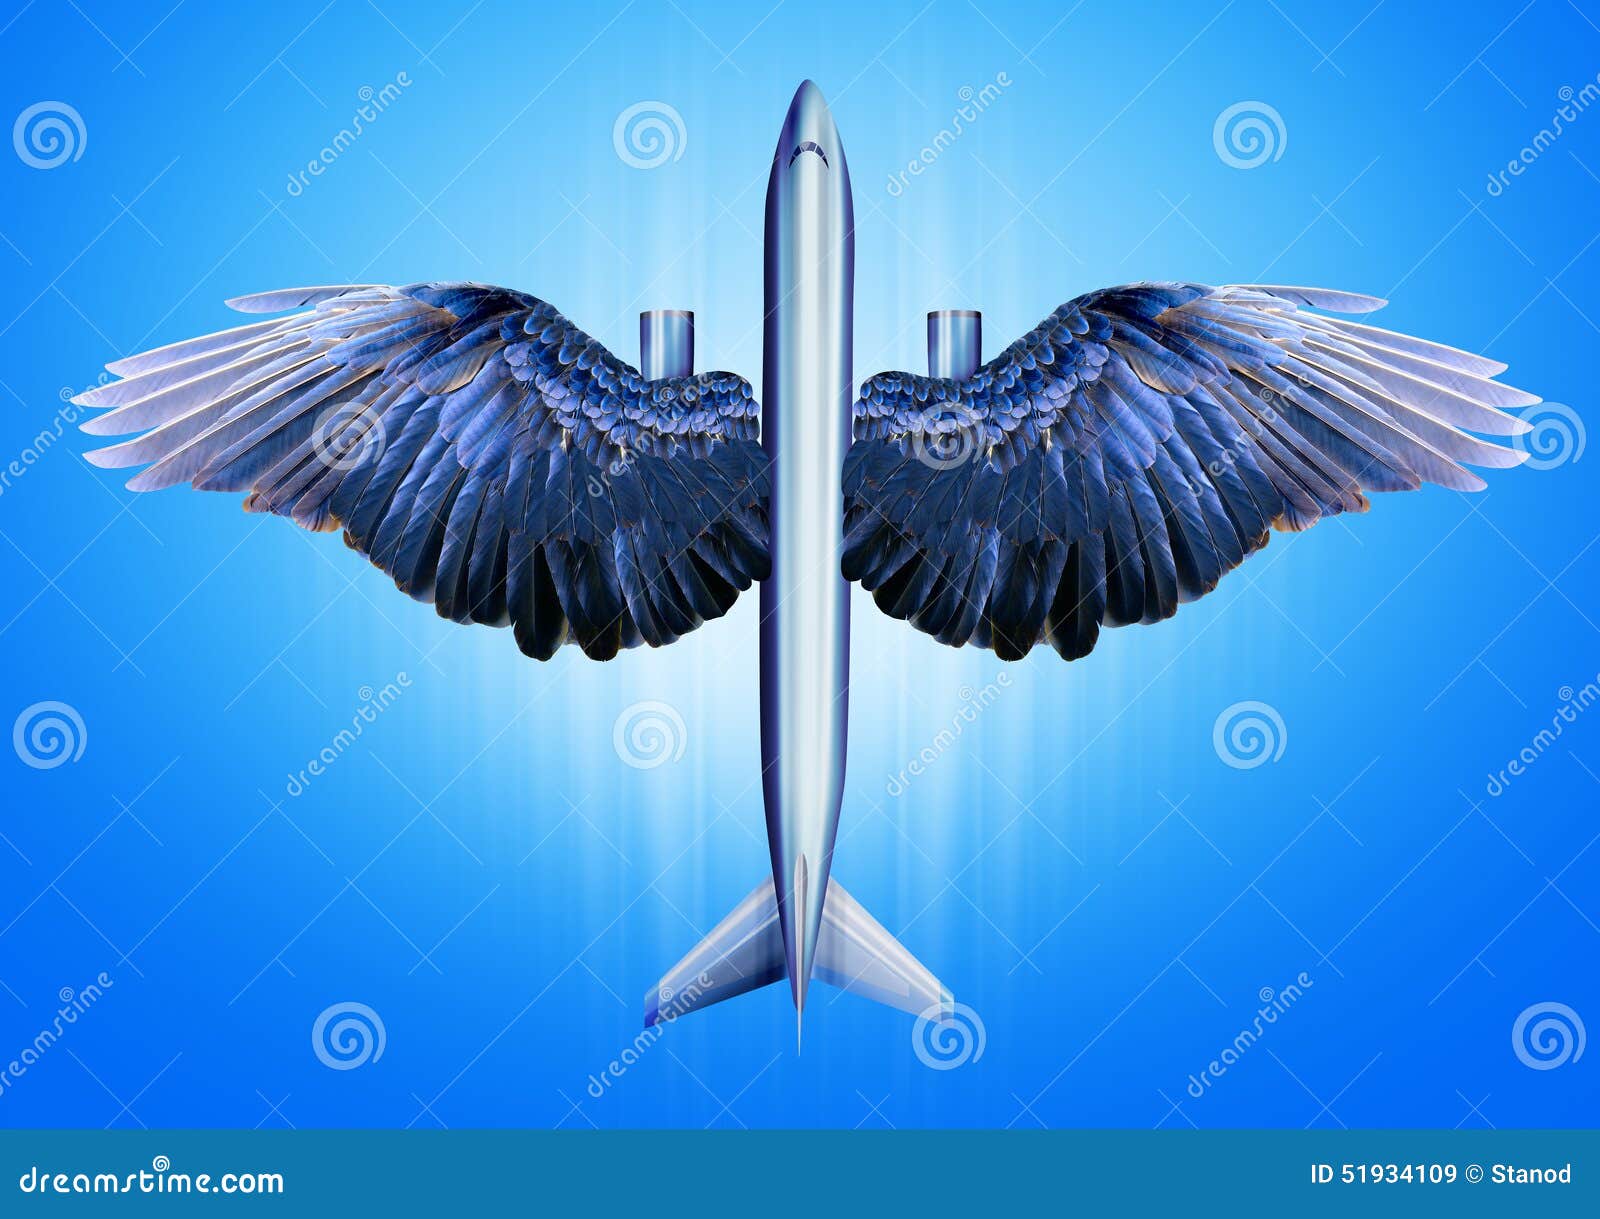 Стали птицы на крыло. Крыло птицы. Самолет с крыльями птицы. Птичье крыло. Крыло птицы и крыло самолета.